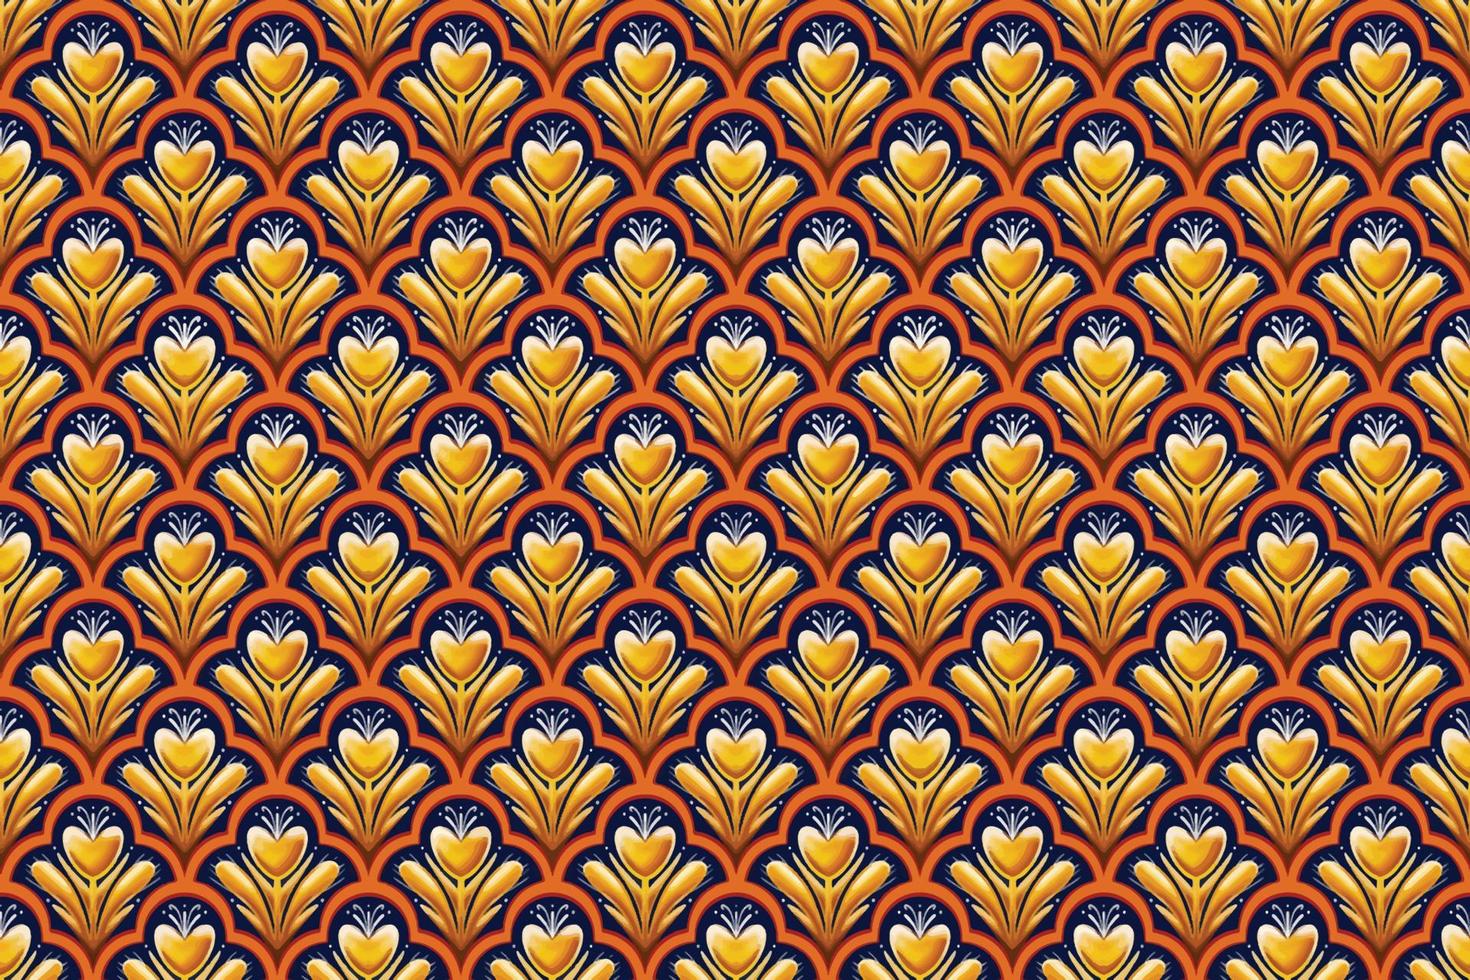 flor amarela em azul marinho, branco, laranja padrão geométrico oriental design tradicional para plano de fundo, tapete, papel de parede, roupas, embrulho, batik, tecido, estilo de bordado de ilustração vetorial vetor